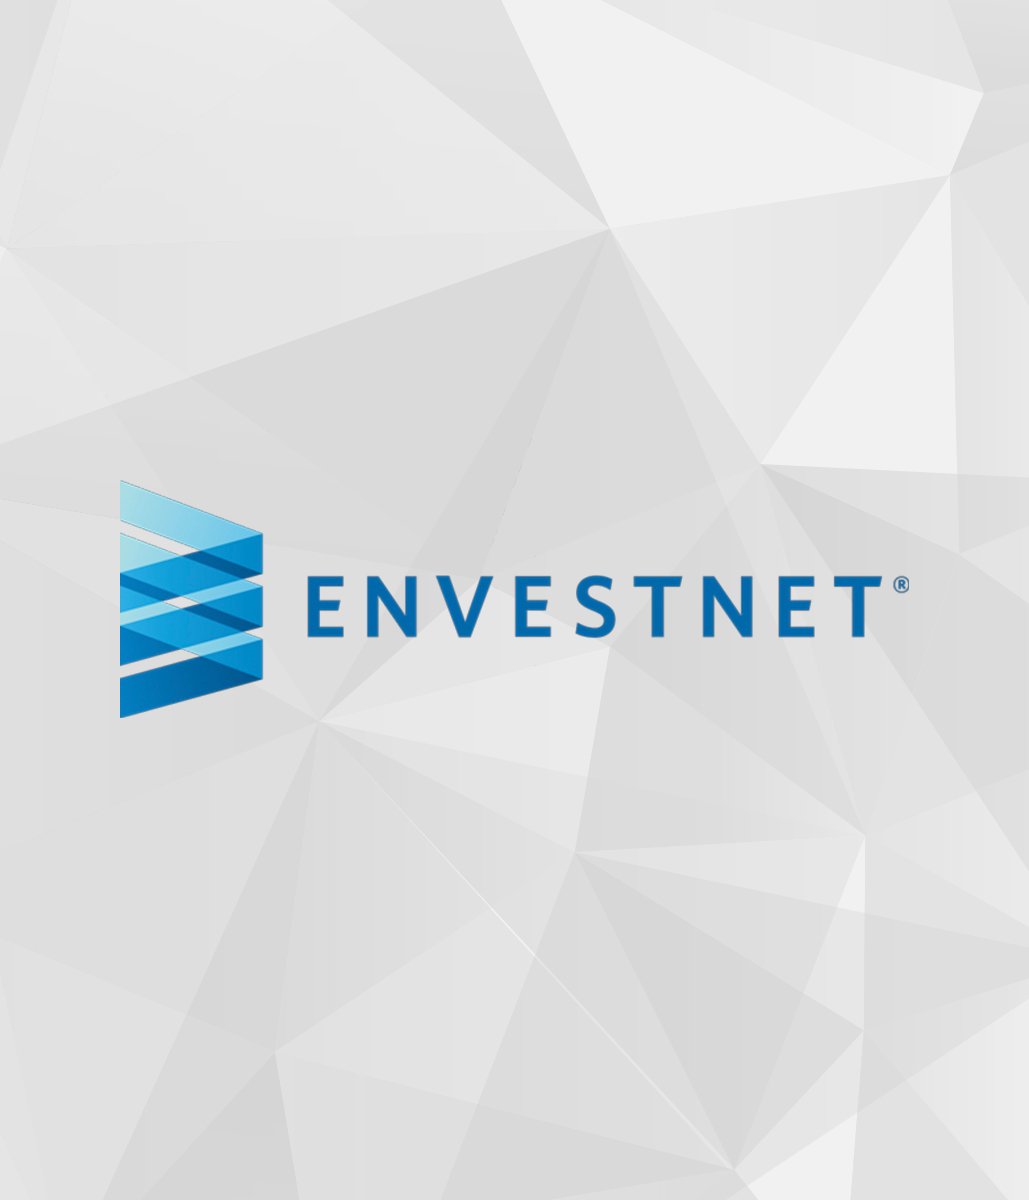 envestnet logo on light gray polygonal background